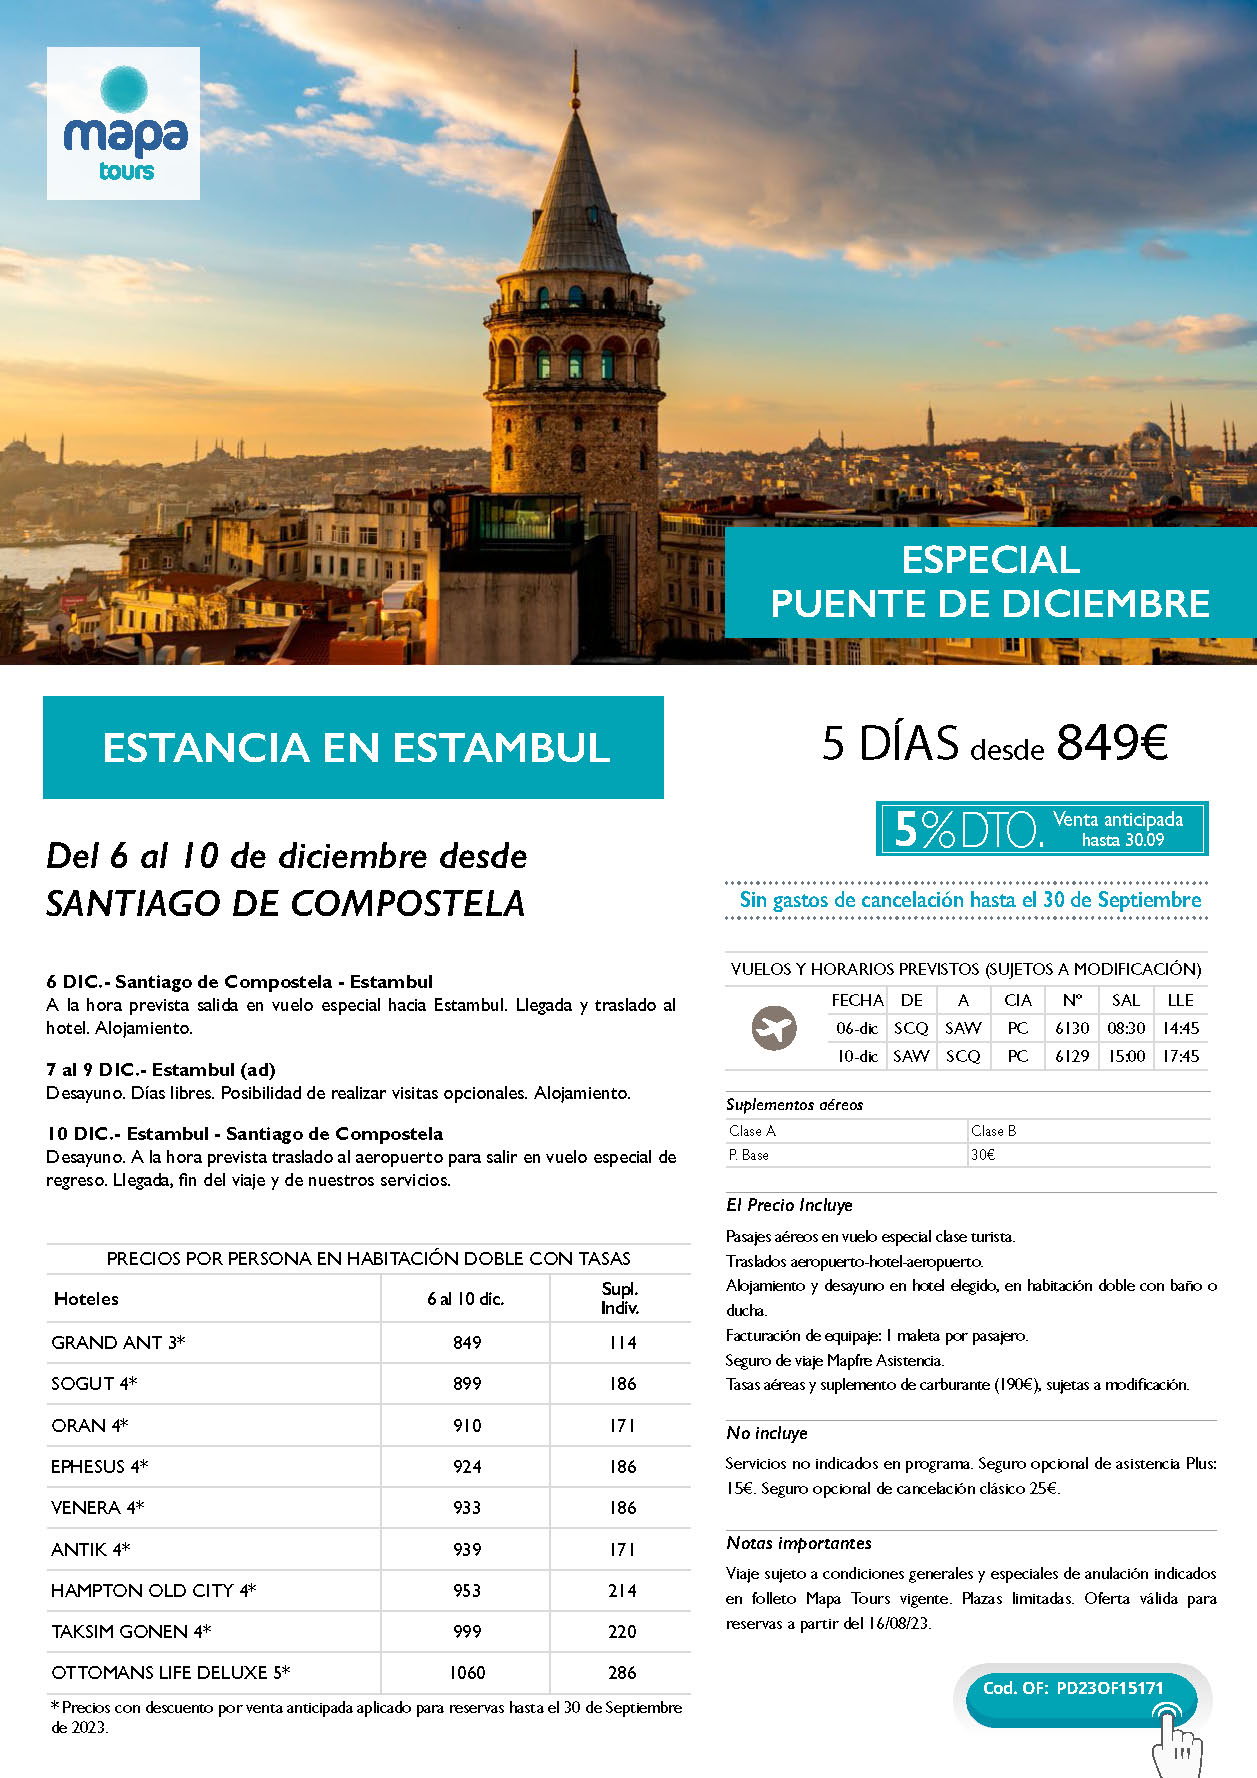 Oferta Mapa Tours Puente de Diciembre 2023 Estancia en Estambul 5 dias salida 6 diciembre en vuelo especial directo desde Santiago de Compostela